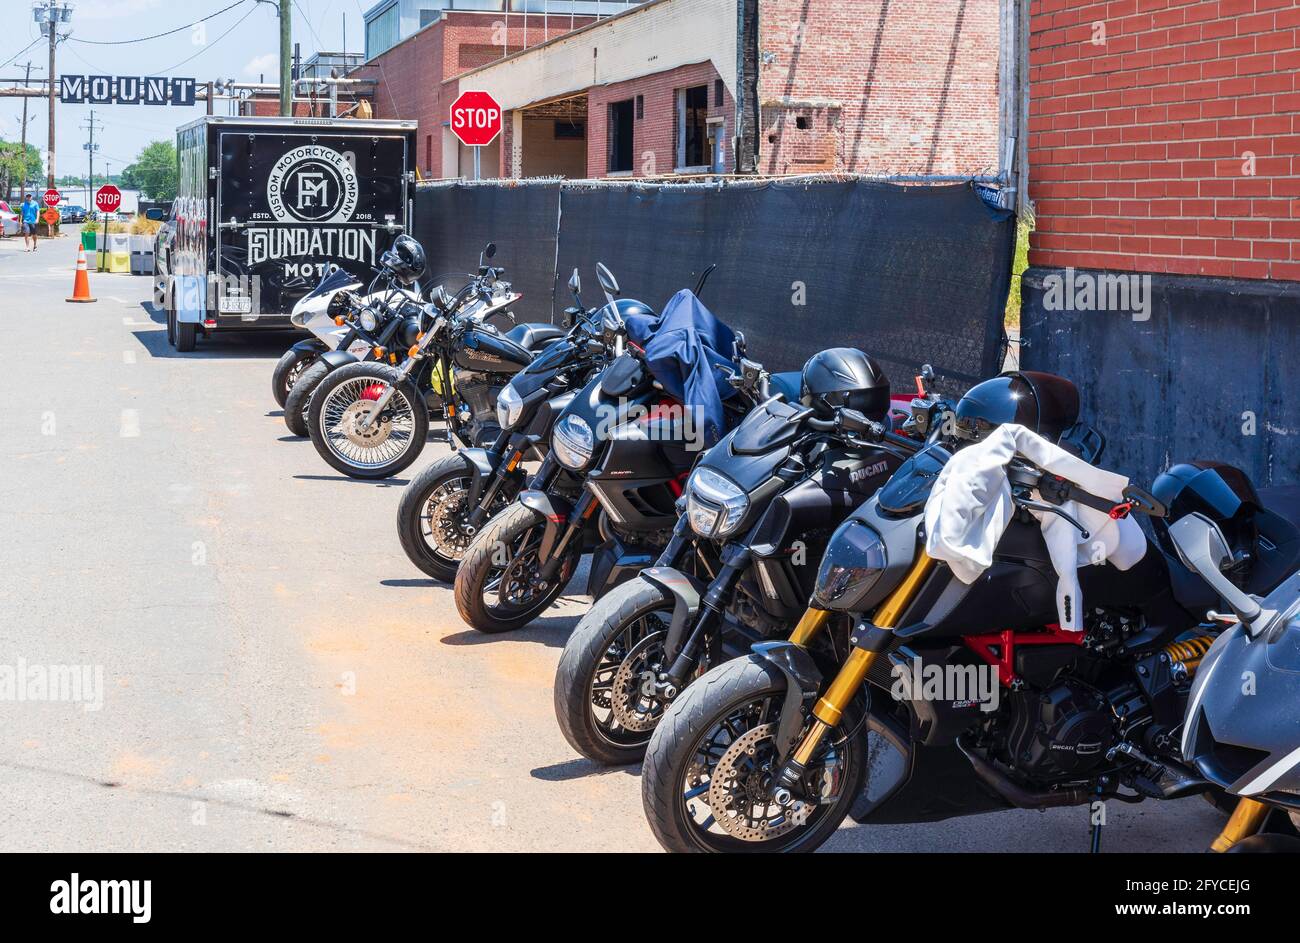 CHARLOTTE, NC, USA-23. MAI 2021: Camp North End. Eine Reihe von Motorrädern und ein Anhänger Werbung Foundation Moto, ein Custom-Motorrad-Unternehmen. Stockfoto